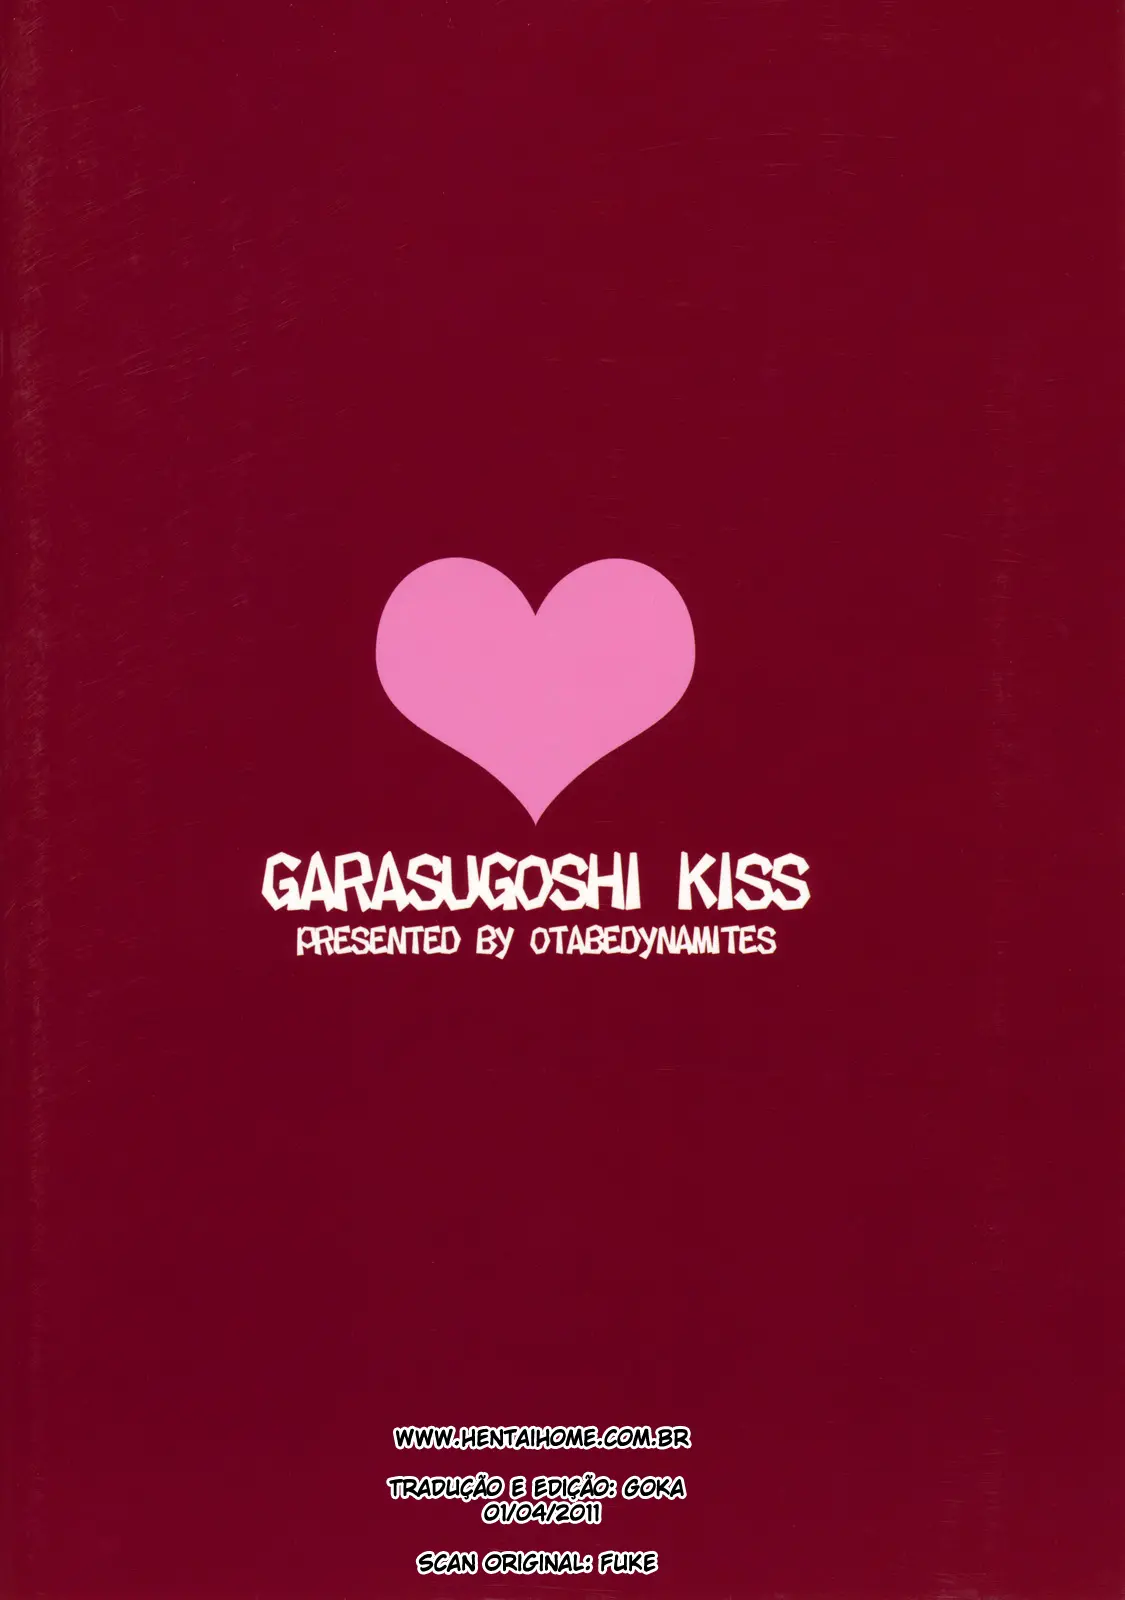 Glass Goshi Kiss